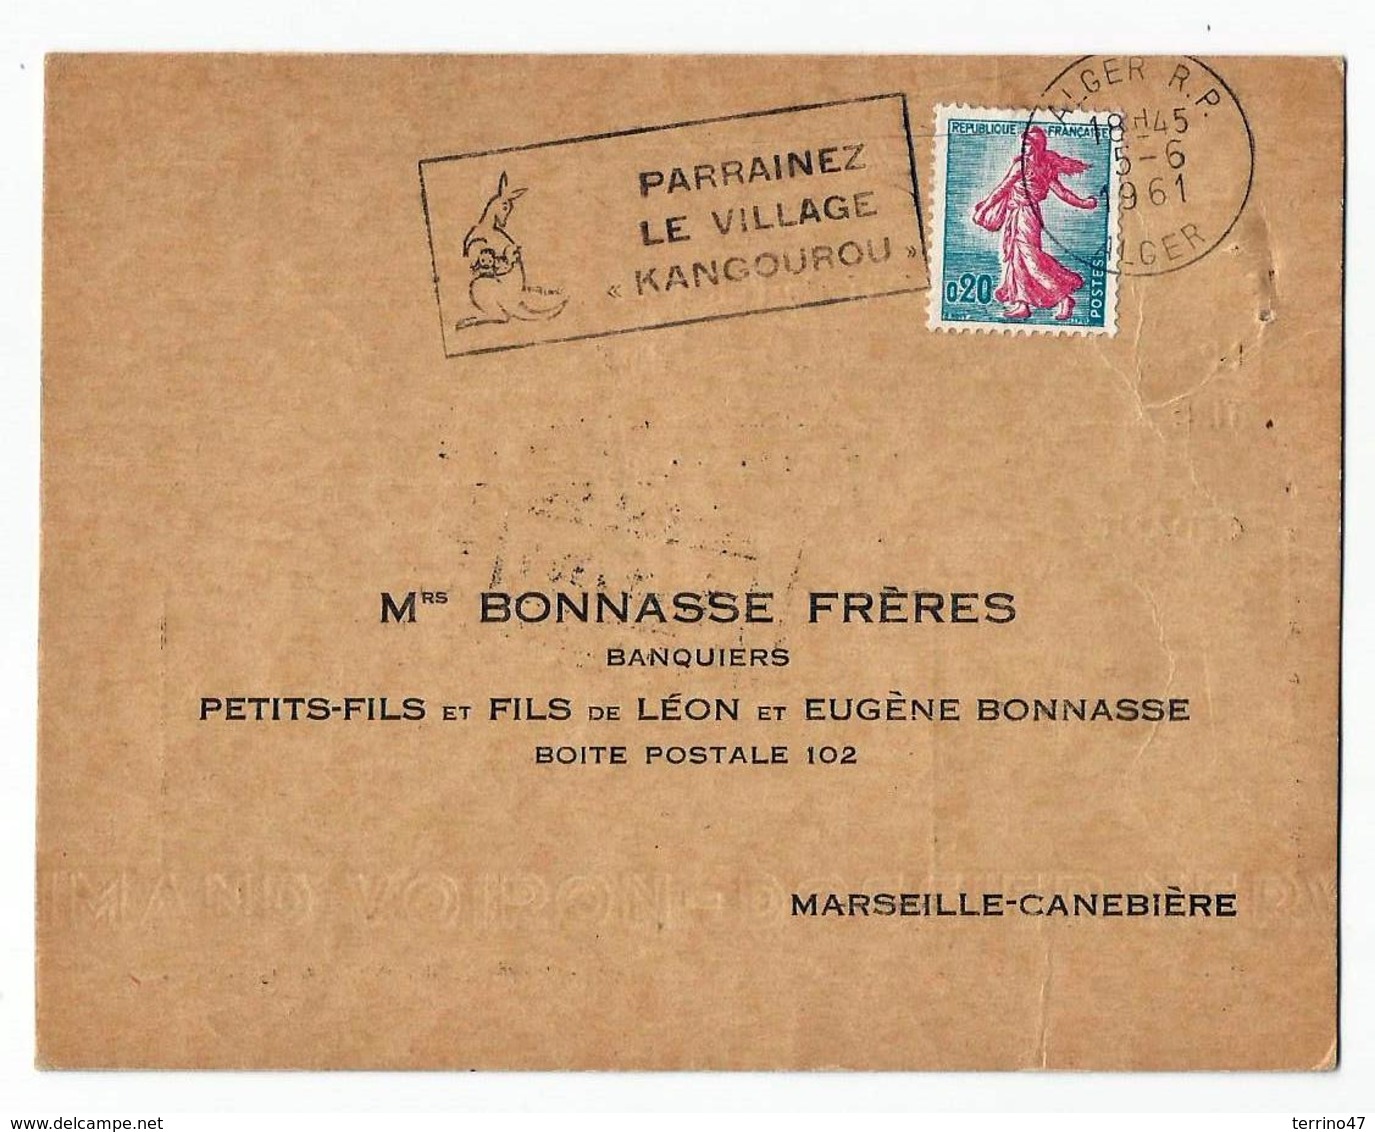 ALGER "Parrainez Le Village Kangourou" - Oblit. 5.6.1961 - Pour Bonasse Frères à Marseille- Canebière - Lettres & Documents